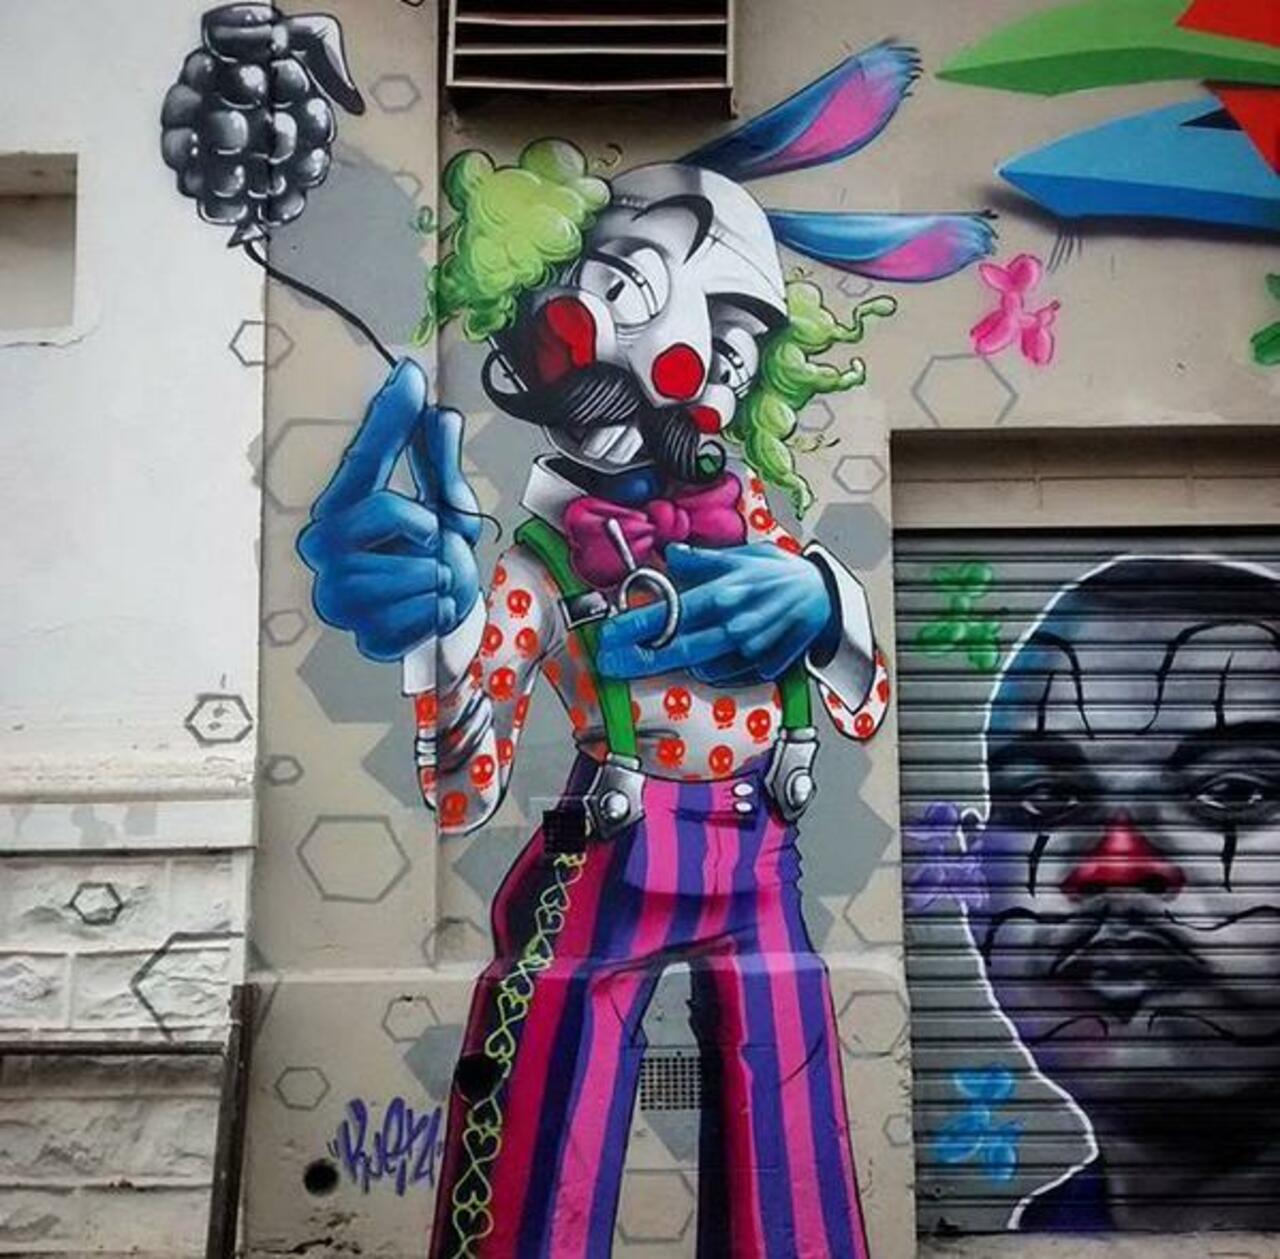 #lovethis: a new street art by Karen Kueia #urbanart #colorful 
#art #graffiti #mural #streetart https://t.co/mmGhgYE6DY